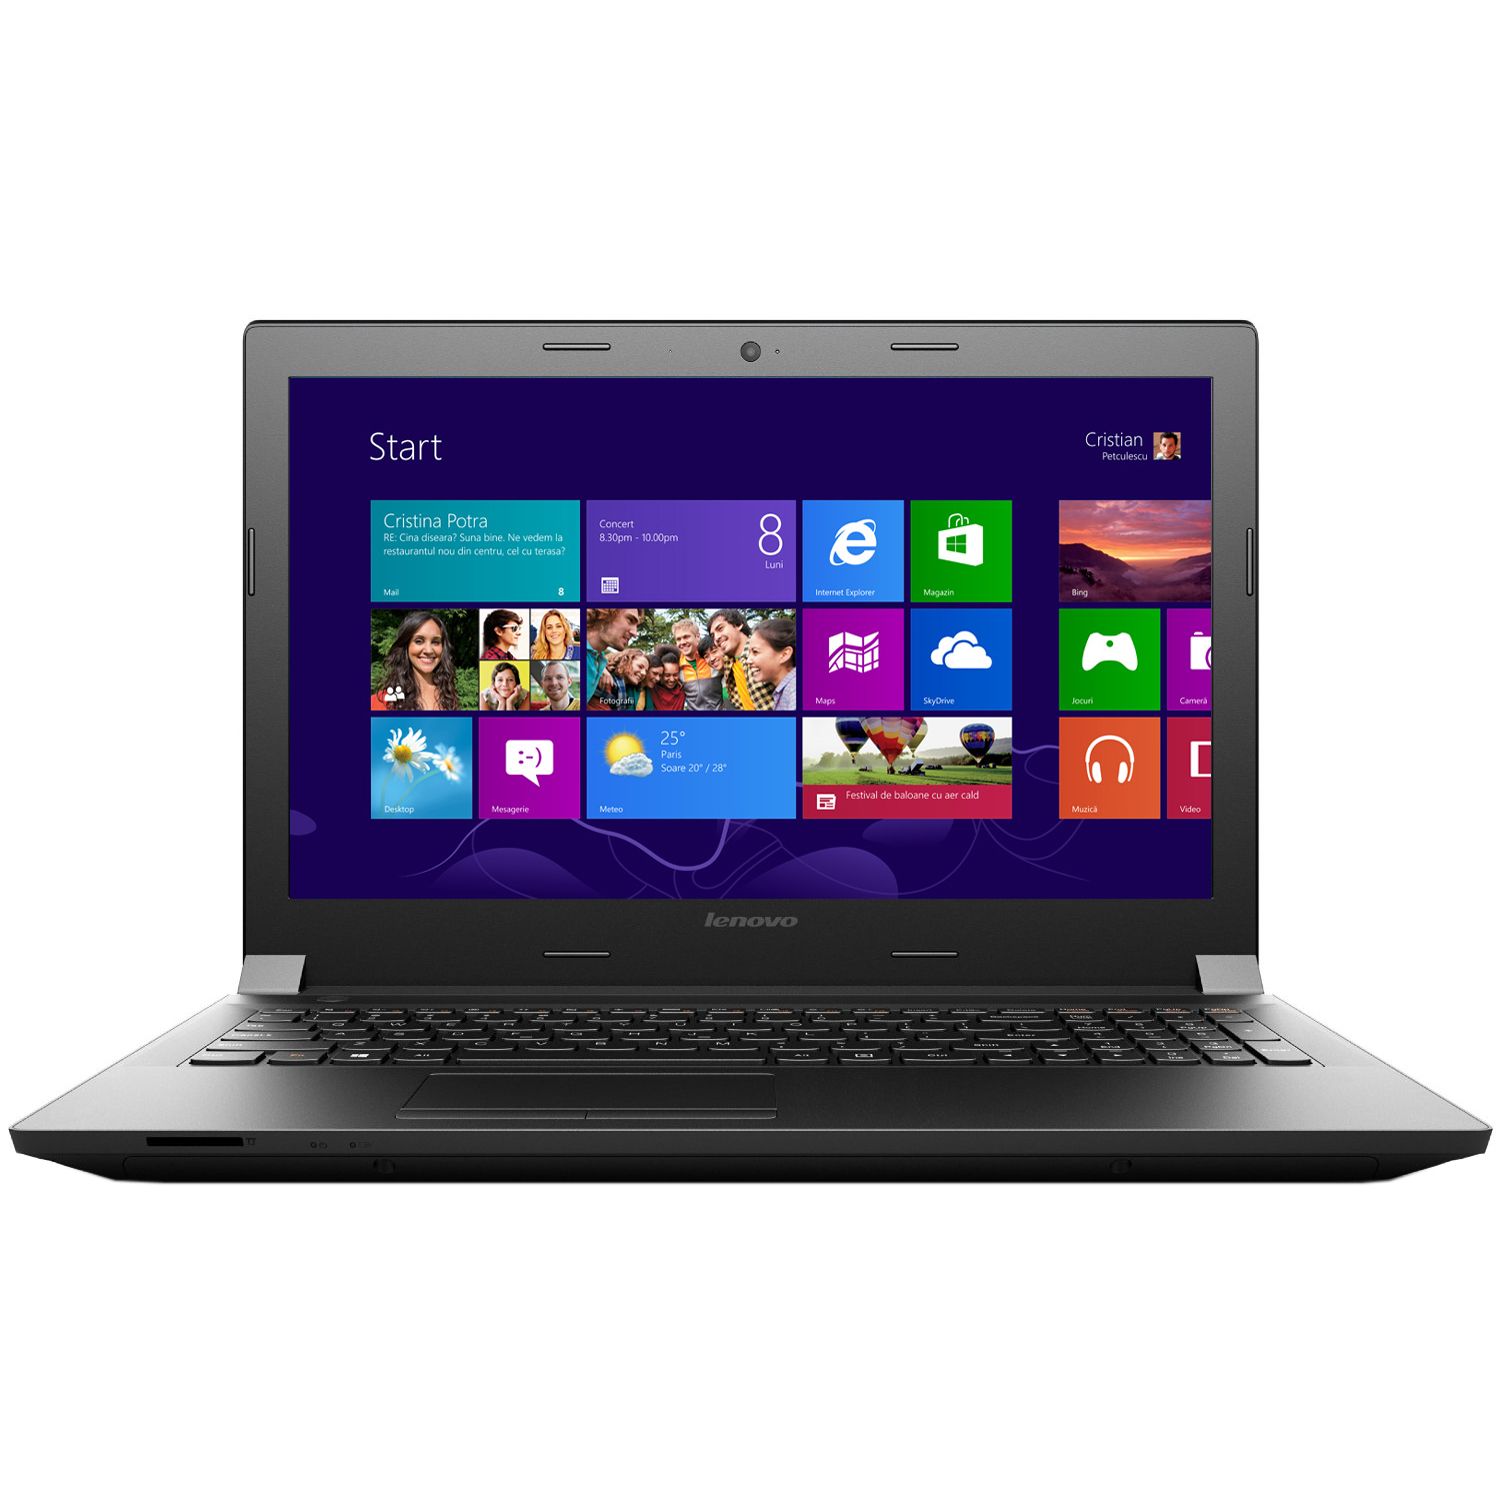 Laptop Lenovo B50-30, Intel Celeron N2840 2.16GHz, 4GB DDR3, 500GB SATA, DVD-RW, 15.6 Inch, Tastatura Numerica, Webcam